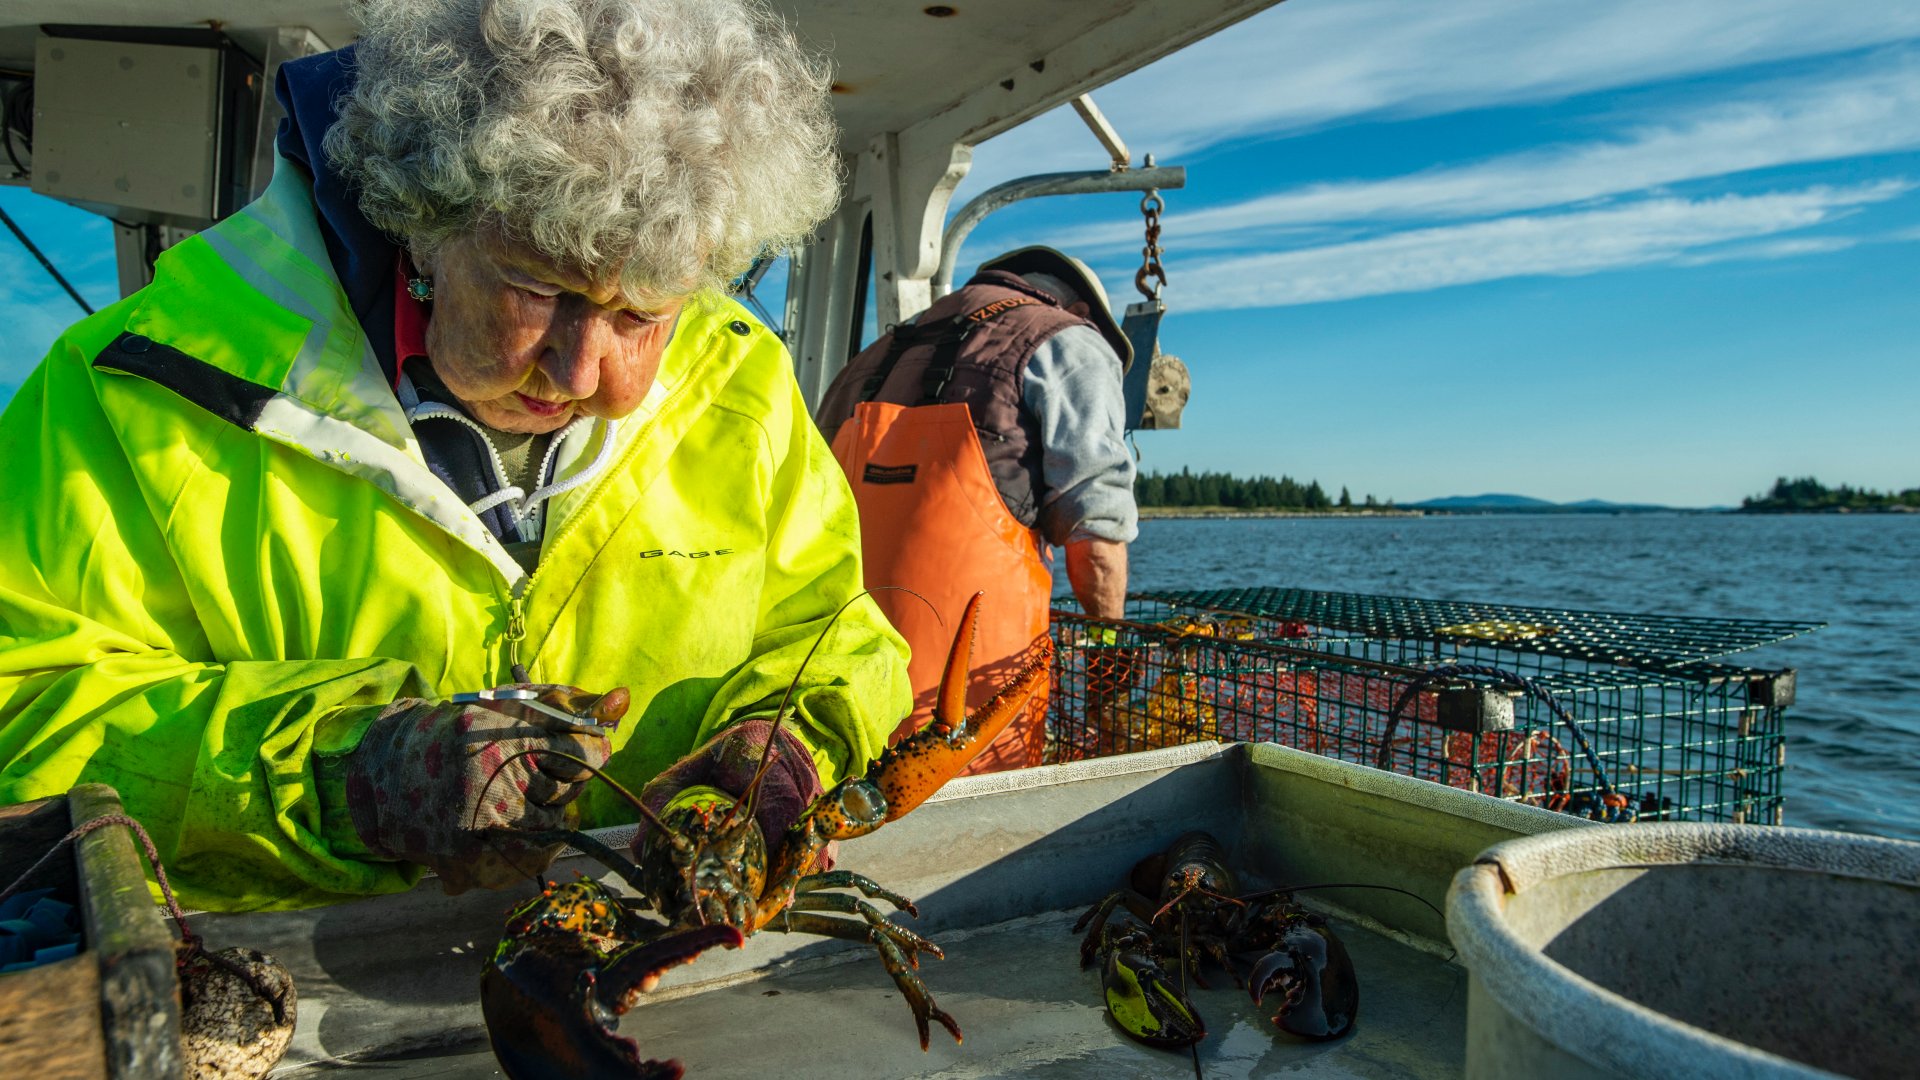 Virginia Oliver ellenőrzi egy homár méretét fia társaságában a Penobscot-öbölben, Maine államban 2021. július 31-én